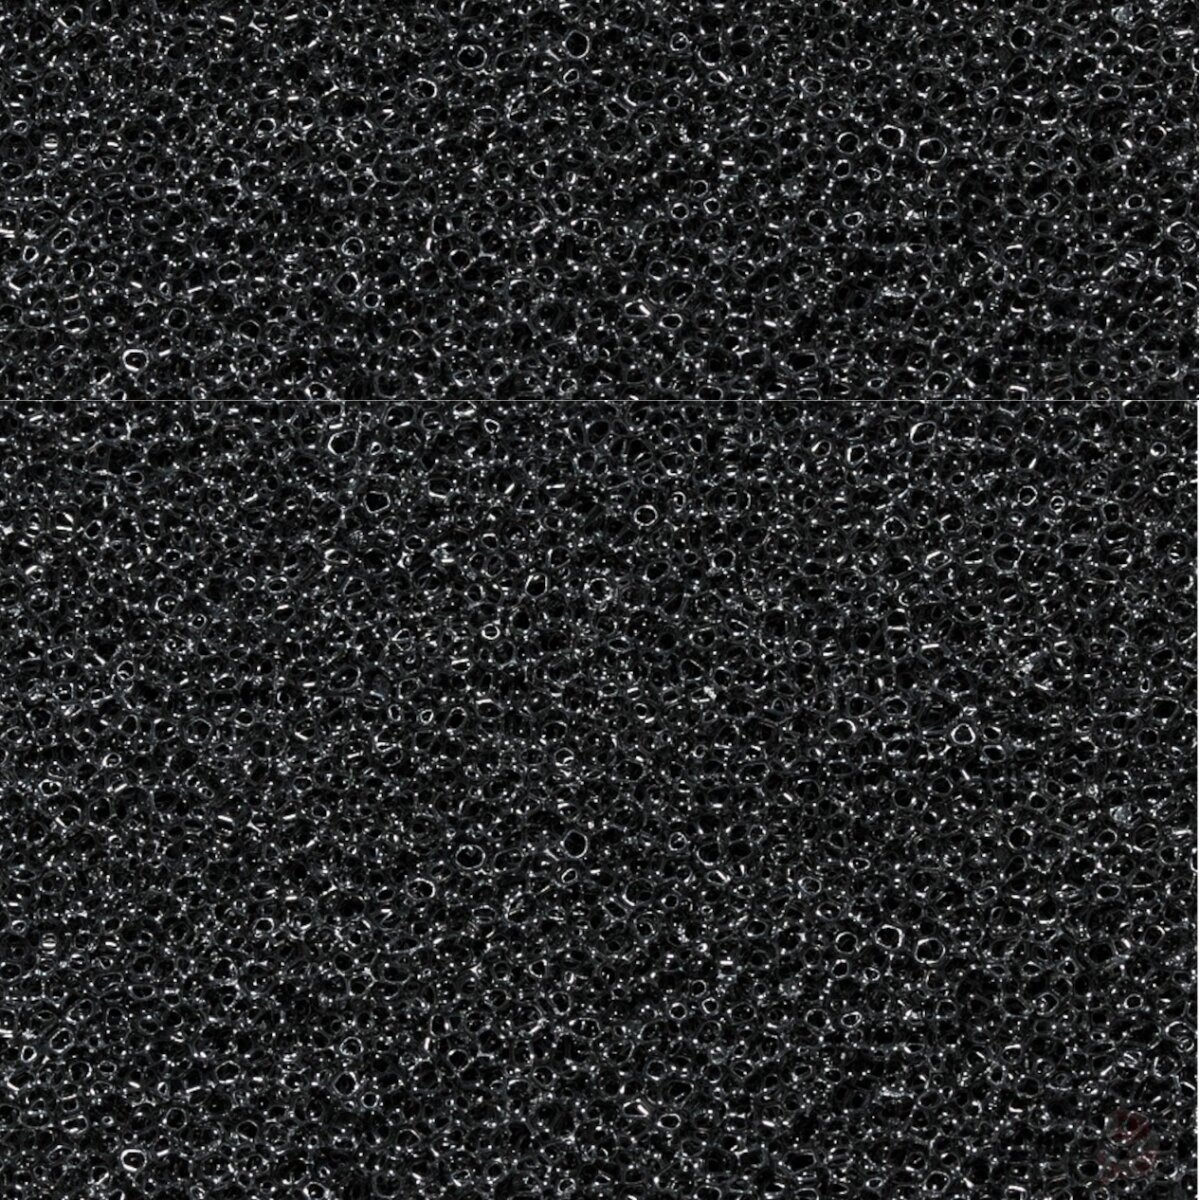 Filtermatte schwarz, 50 x 50 x 5 cm, 45 ppi (Babygarnelen...